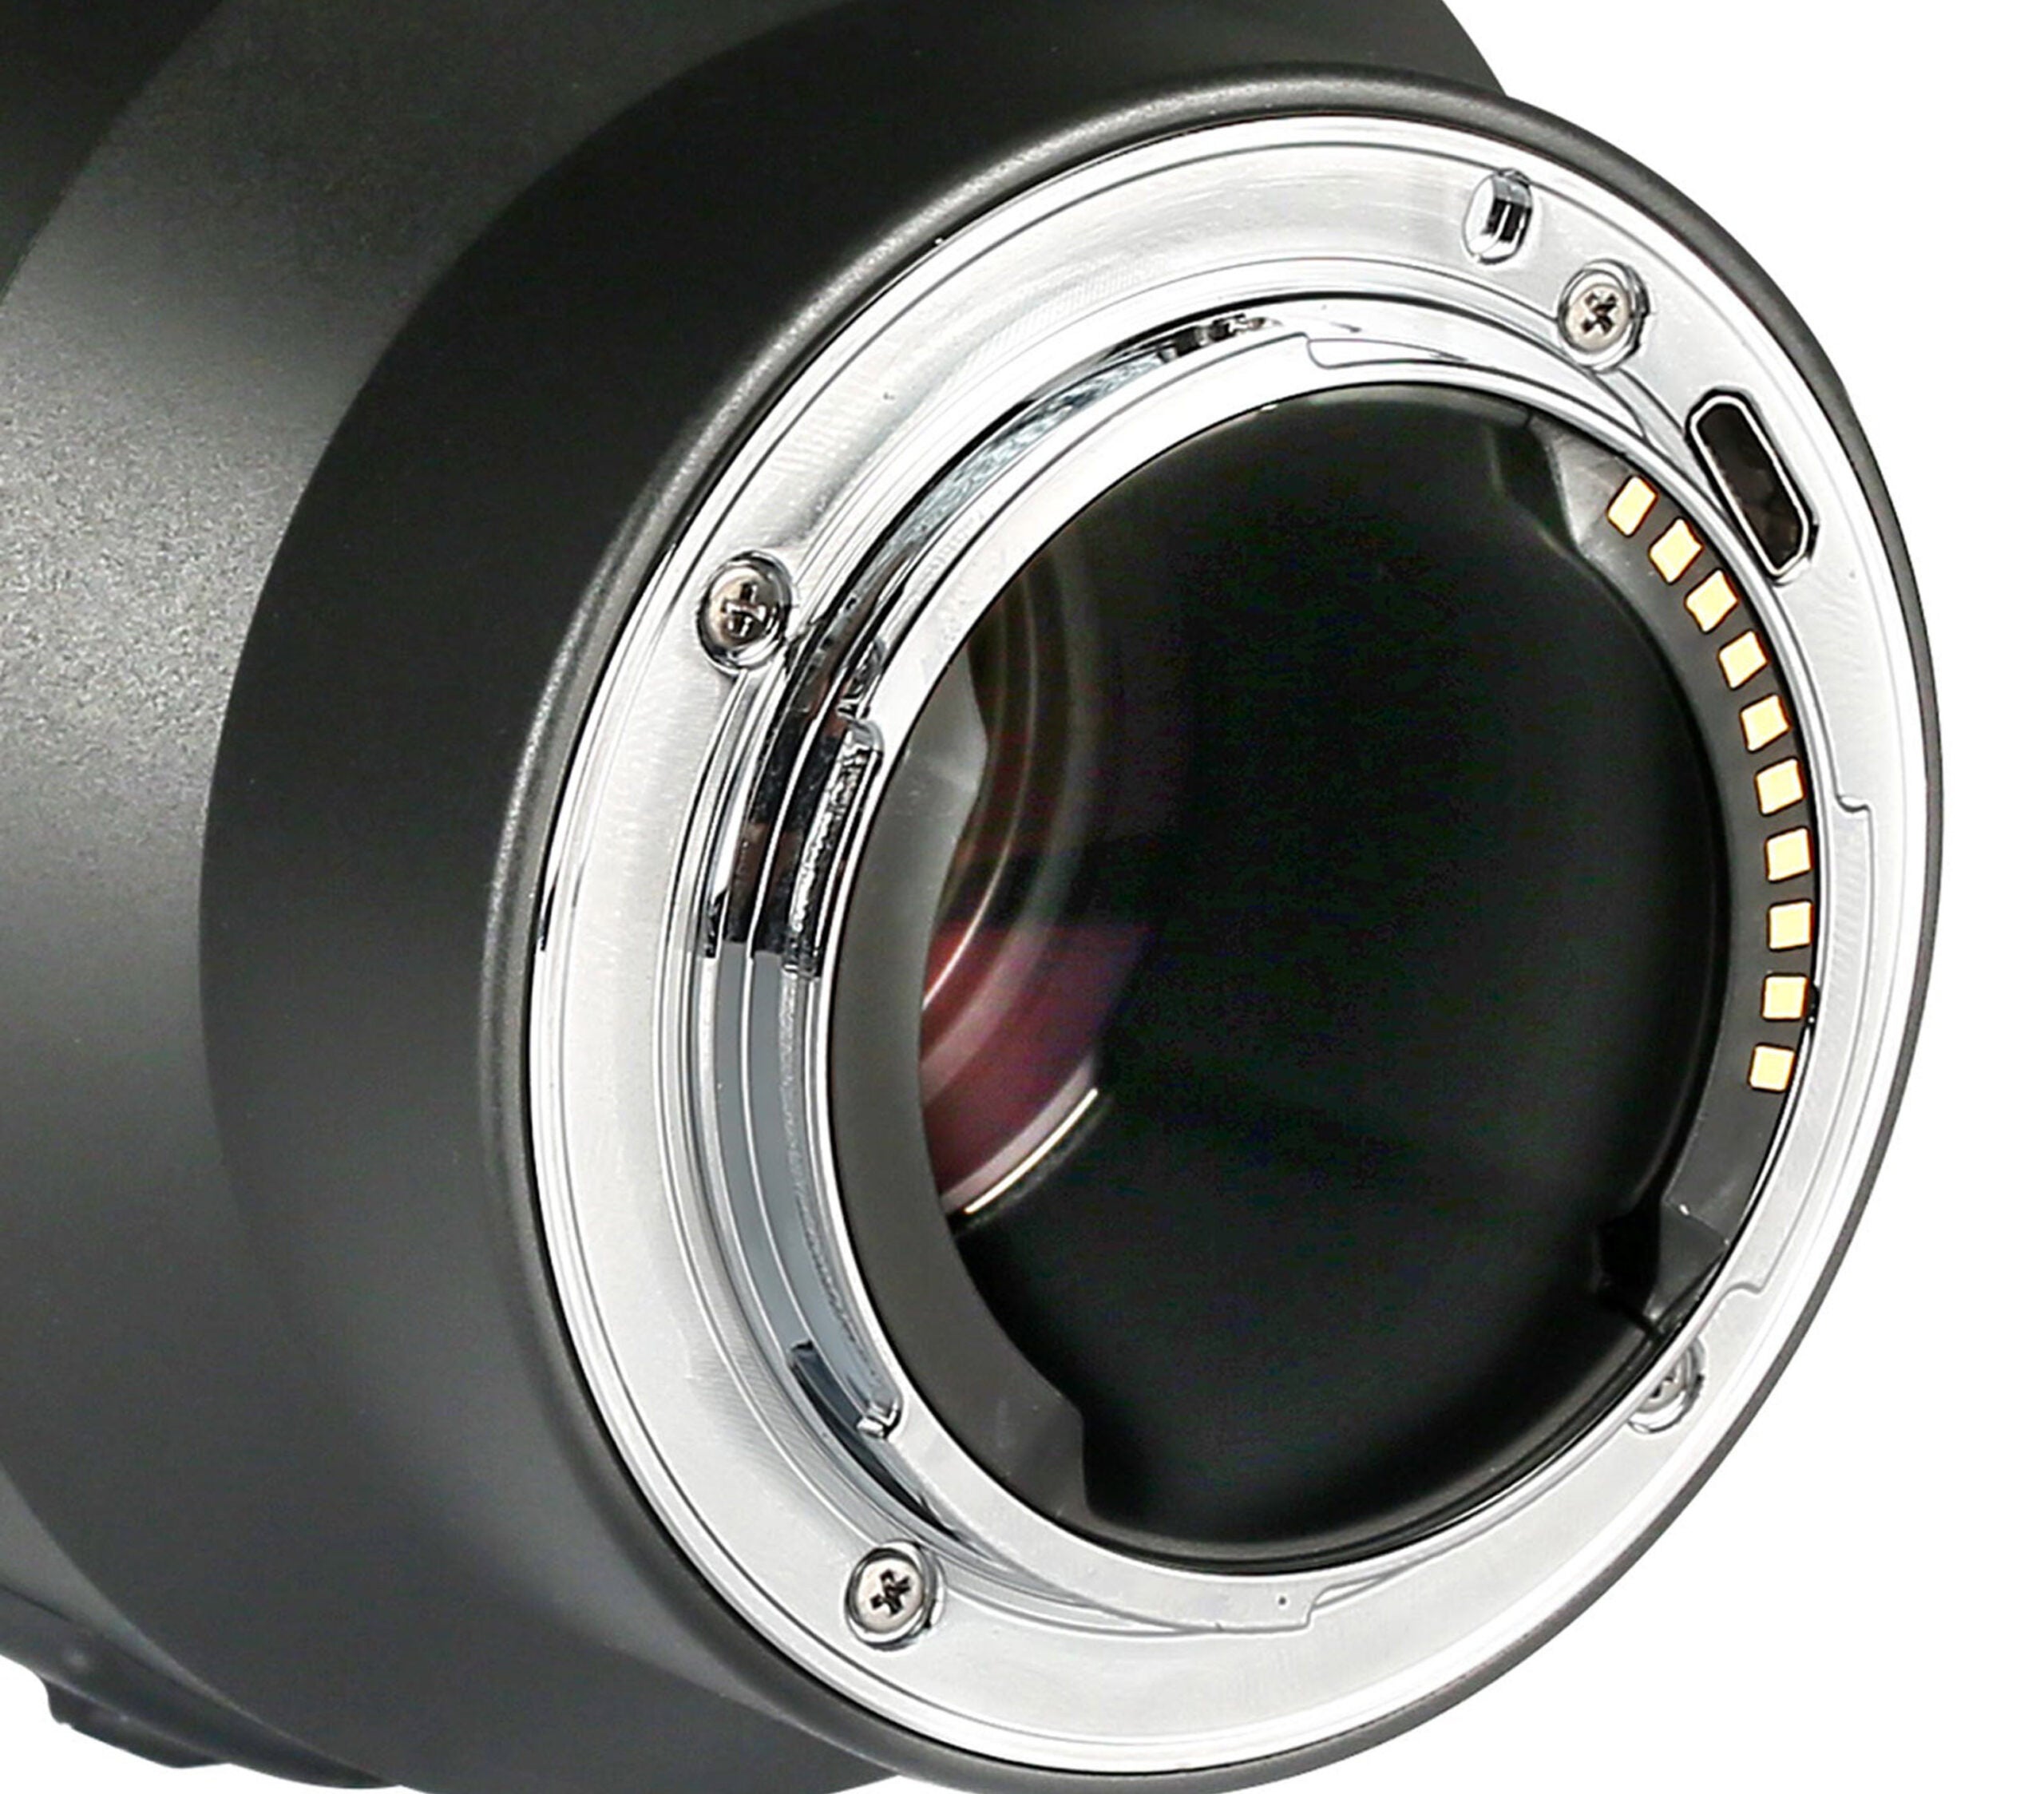 The new Meike 85mm f/1.8 lens for Sony Full-frame E-mount